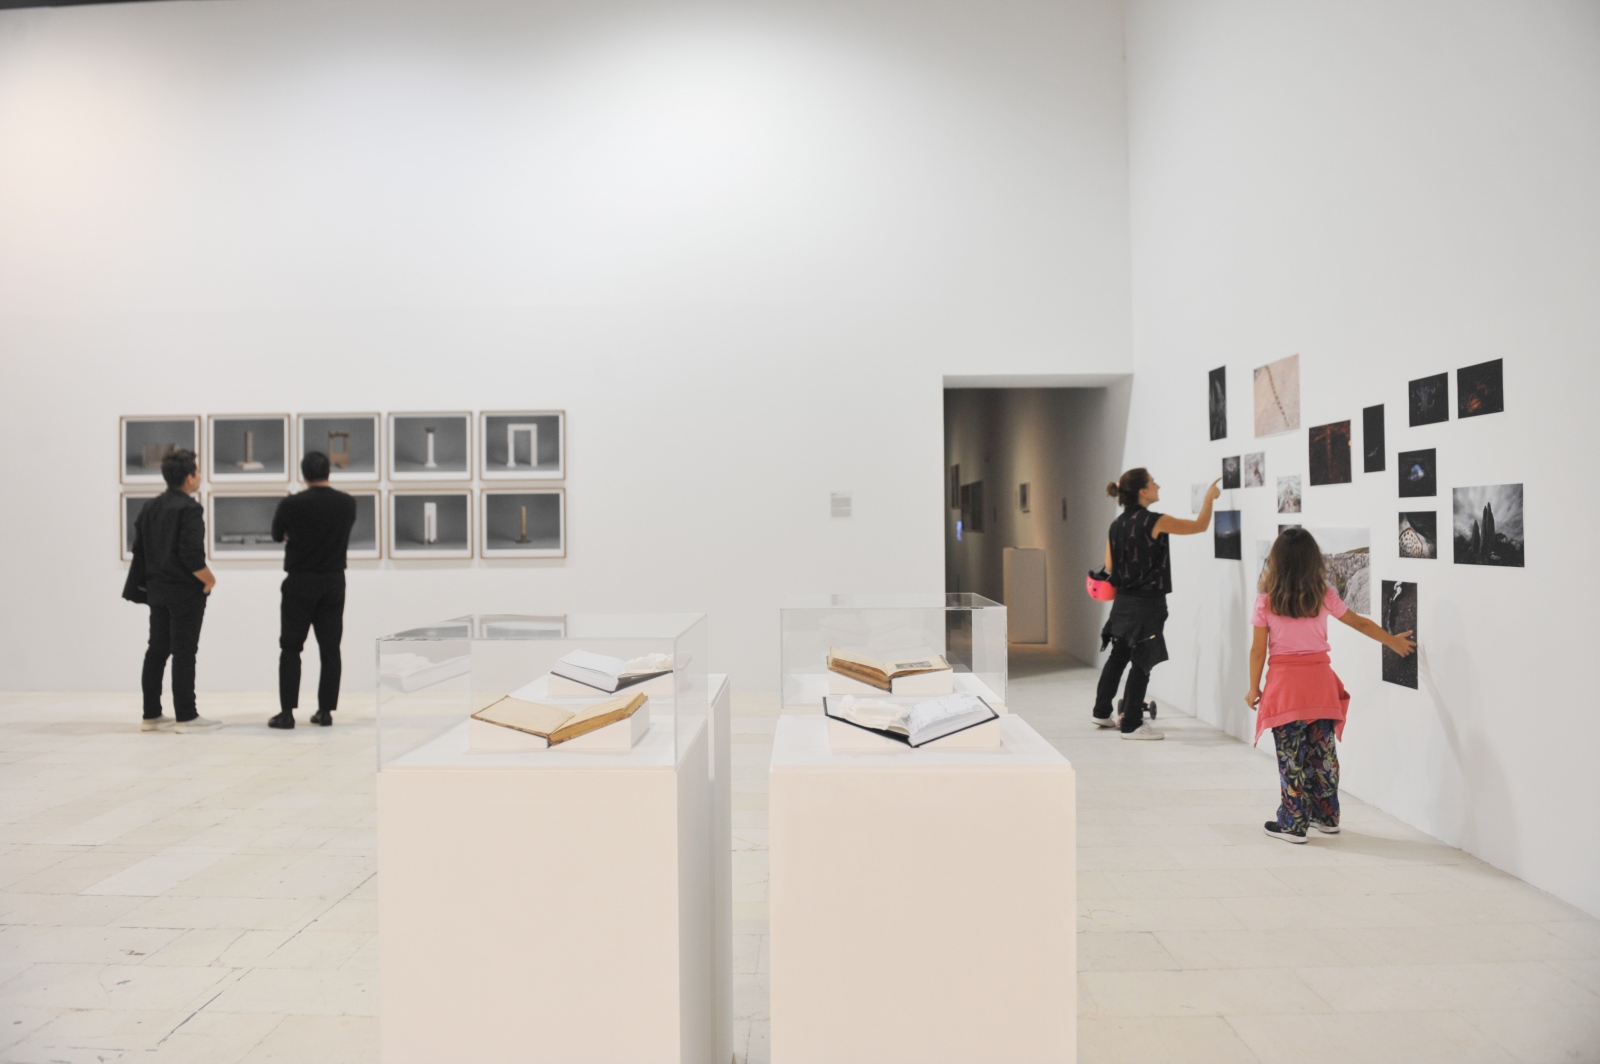 Exhibition at Nicosia Municipal Arts Centre